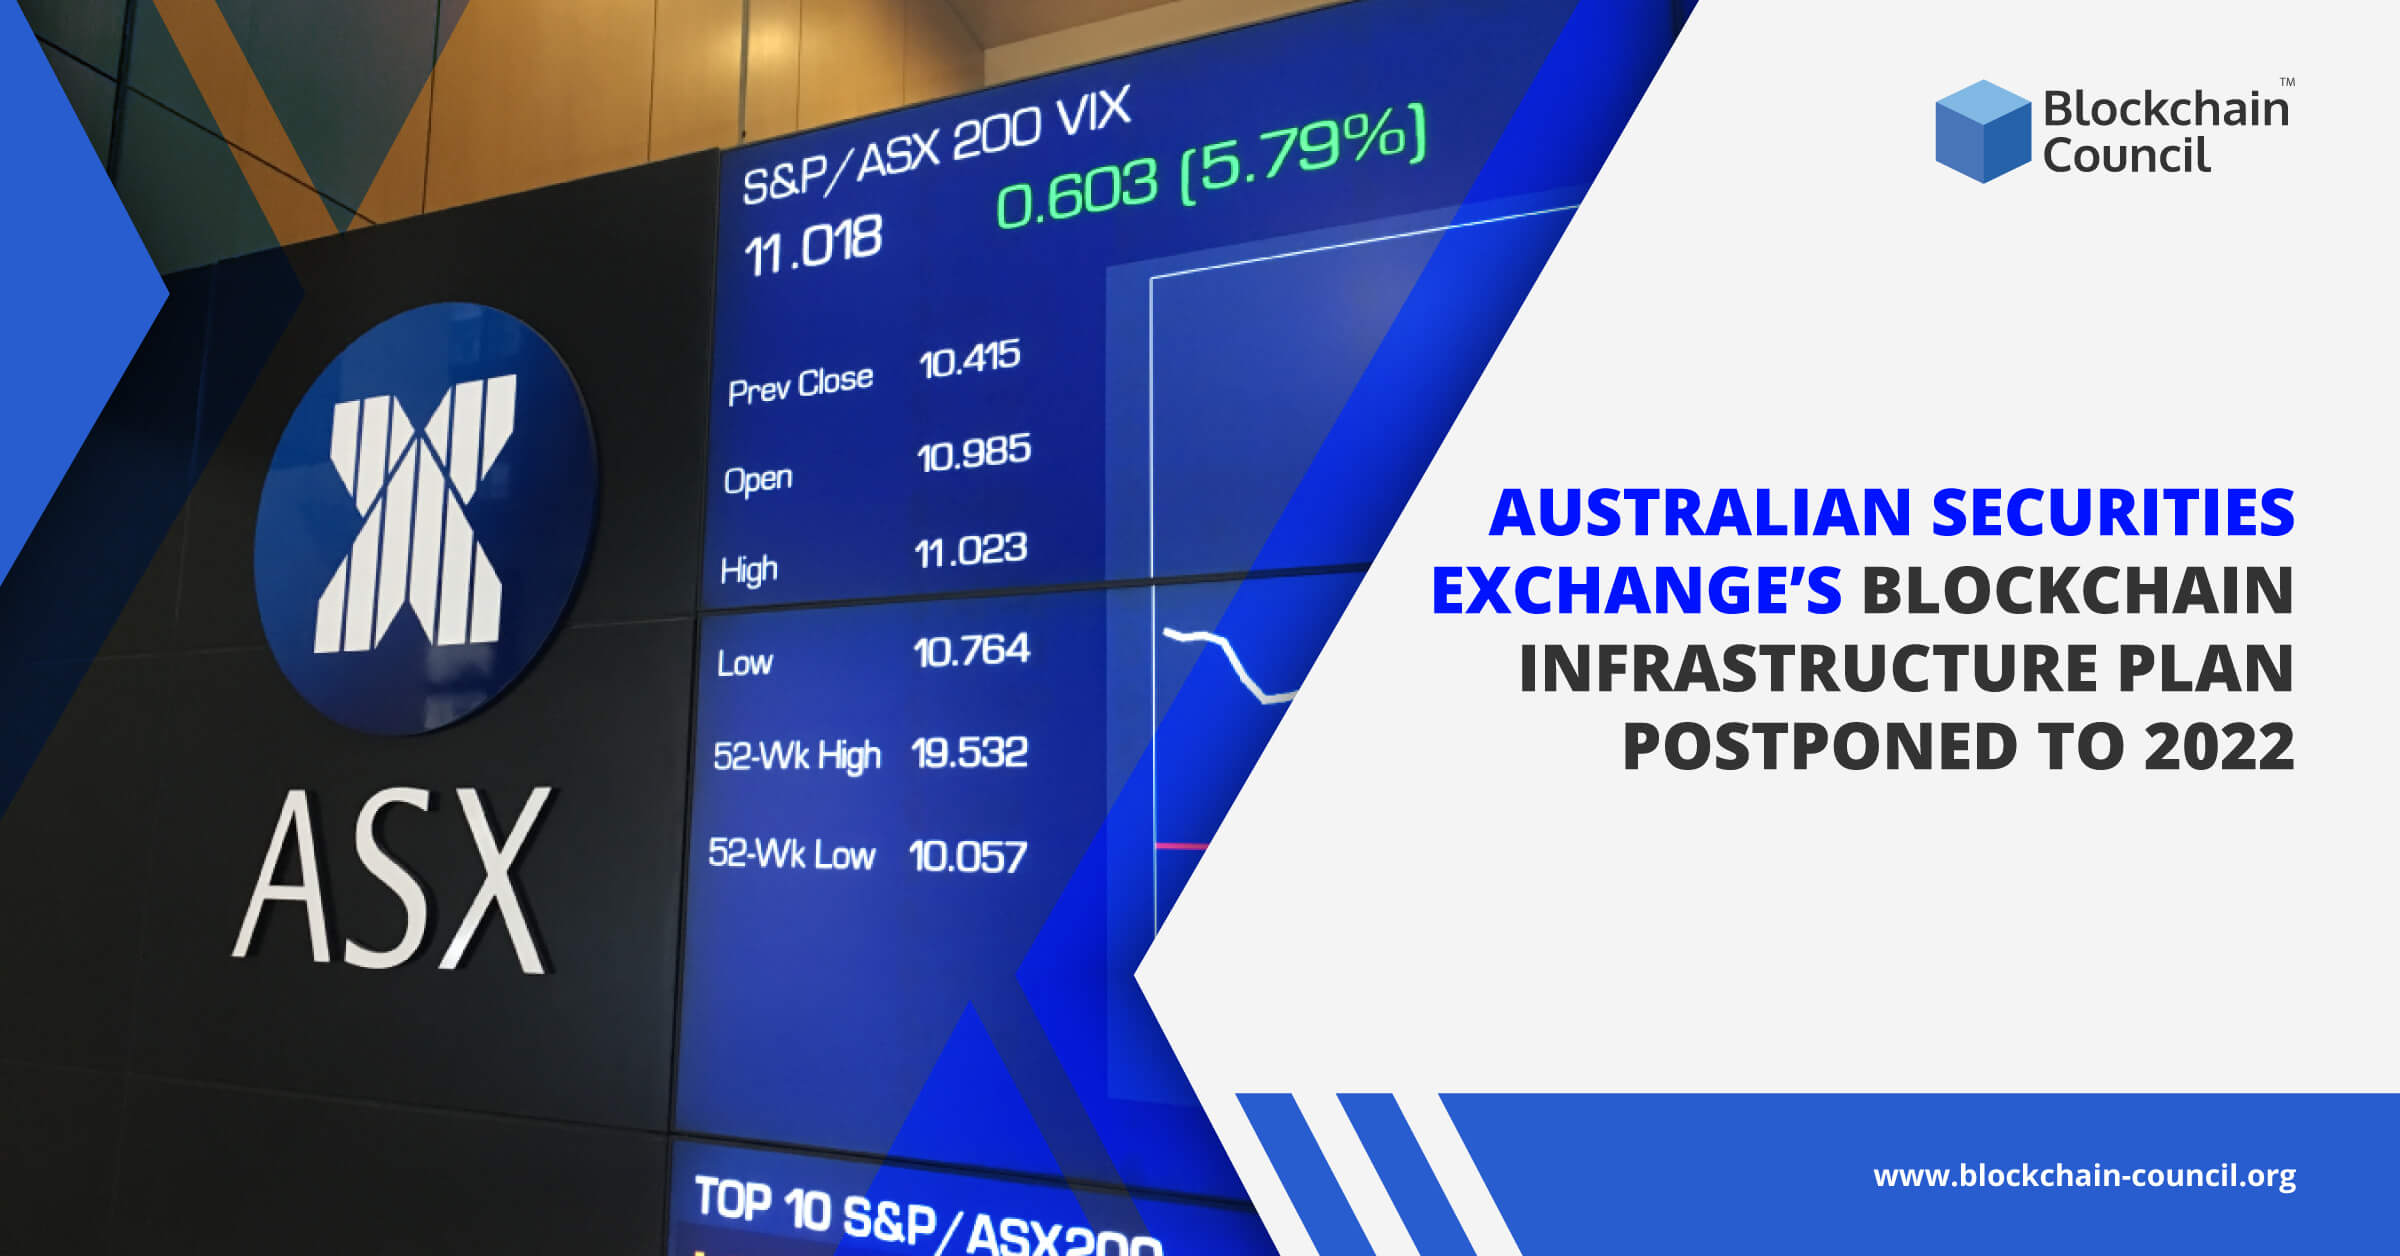 Australian-Securities-Exchange’s-Blockchain-Infrastructure-Plan-Postponed-to-2022